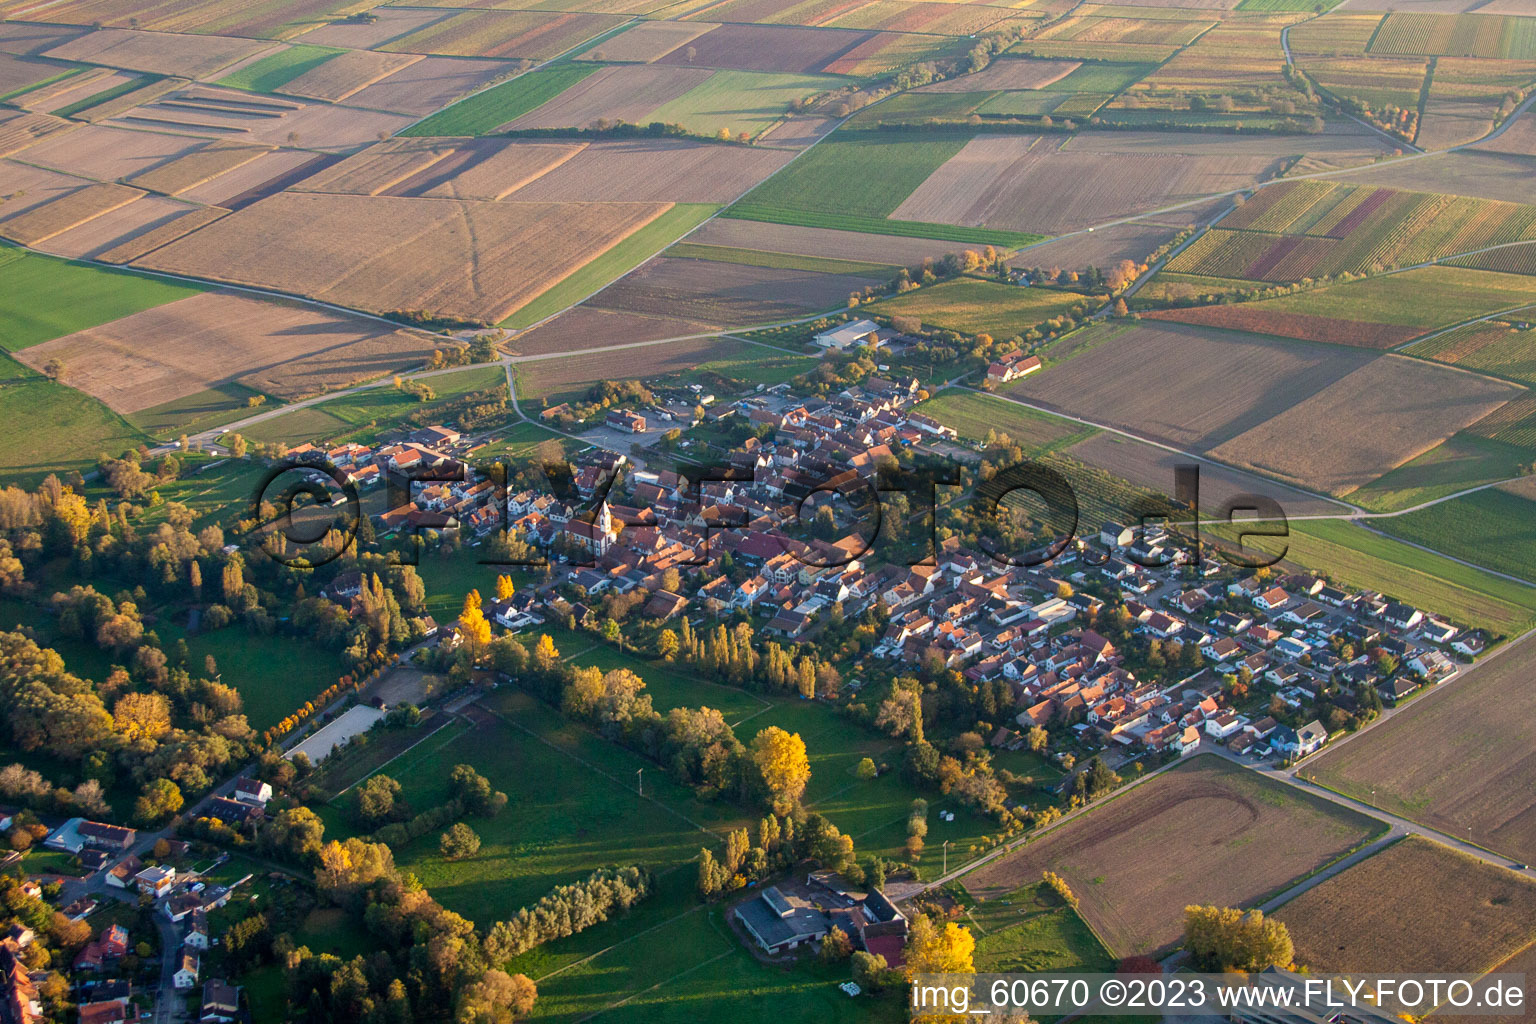 Oblique view of District Mühlhofen in Billigheim-Ingenheim in the state Rhineland-Palatinate, Germany